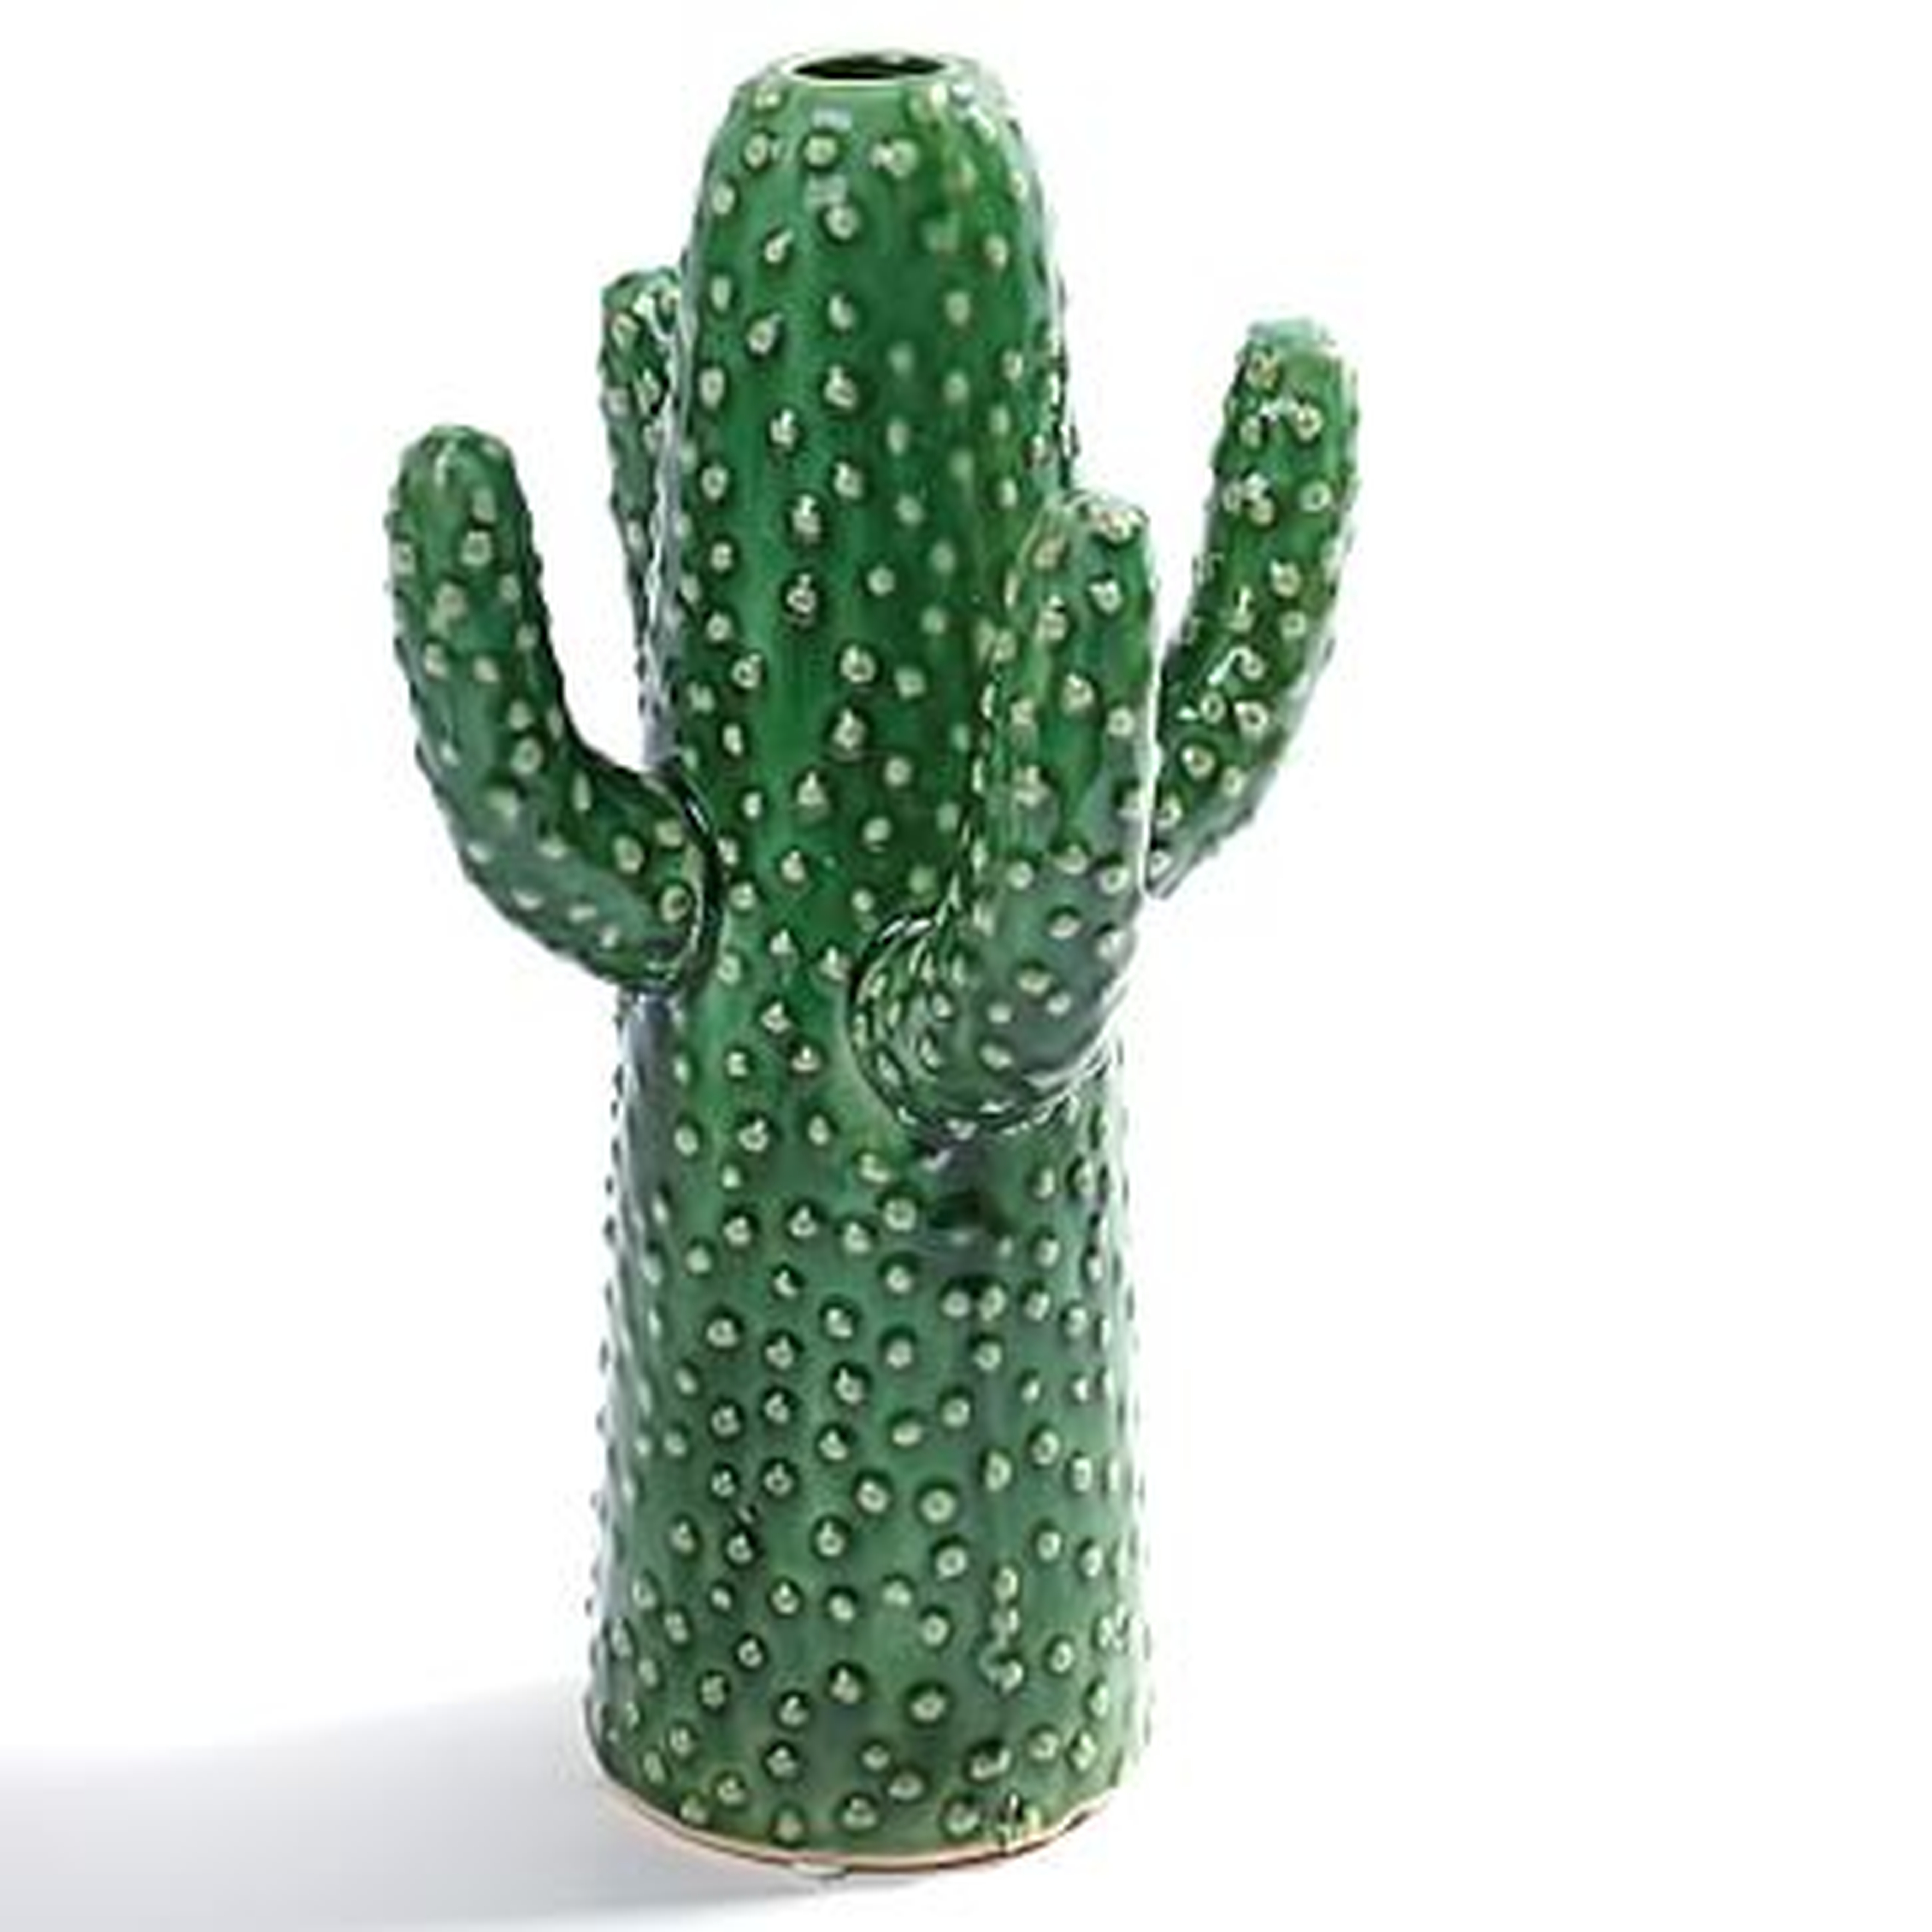 Glass Cactus Vase, Medium - West Elm